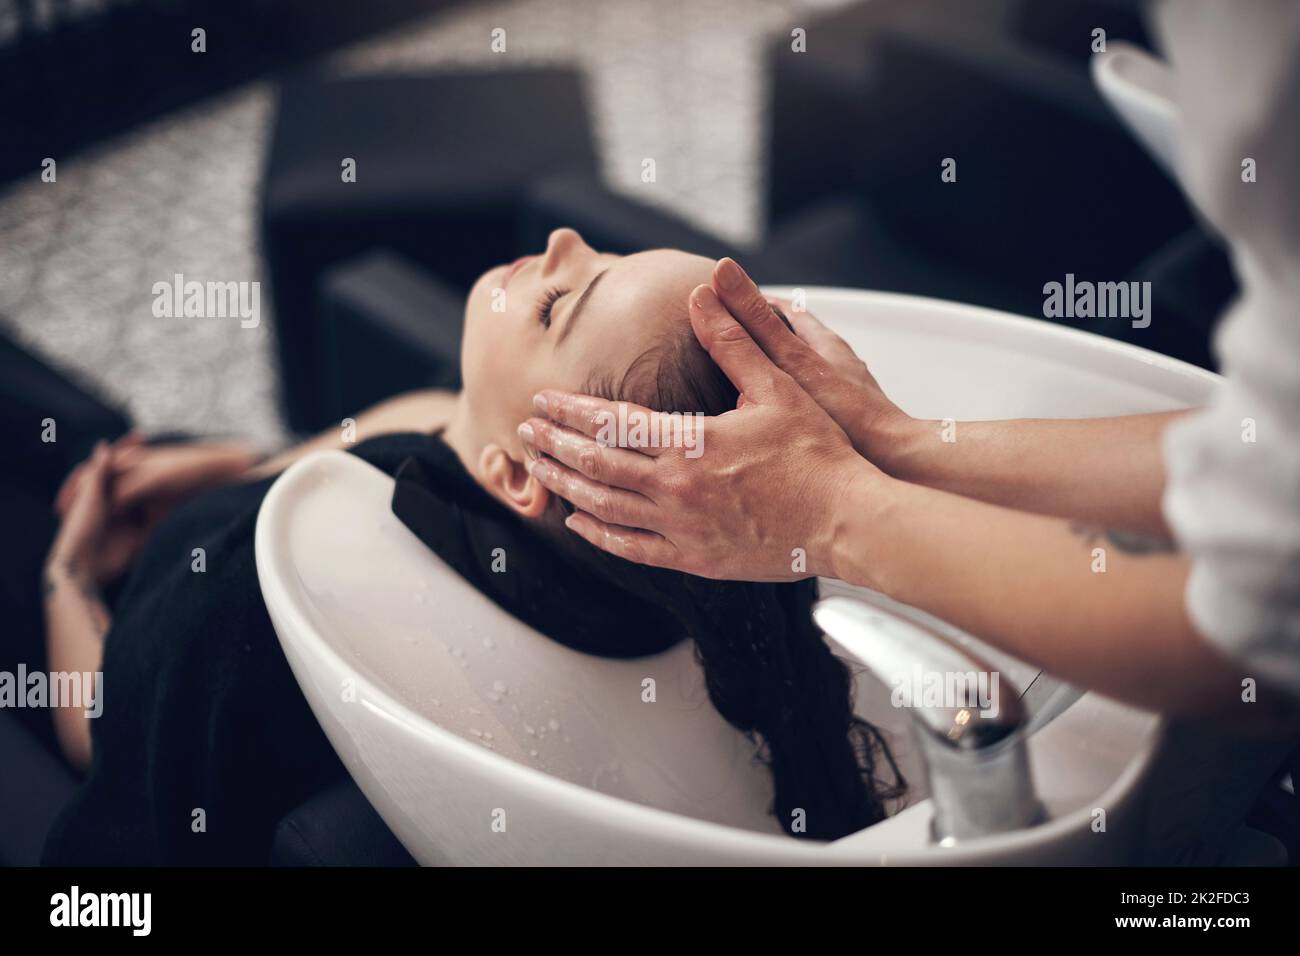 Schön aussehendes Haar beginnt mit einem wirklich guten Shampoo. Aufnahme einer schönen jungen Frau, die im Salon ihre Haare waschen ließ. Stockfoto